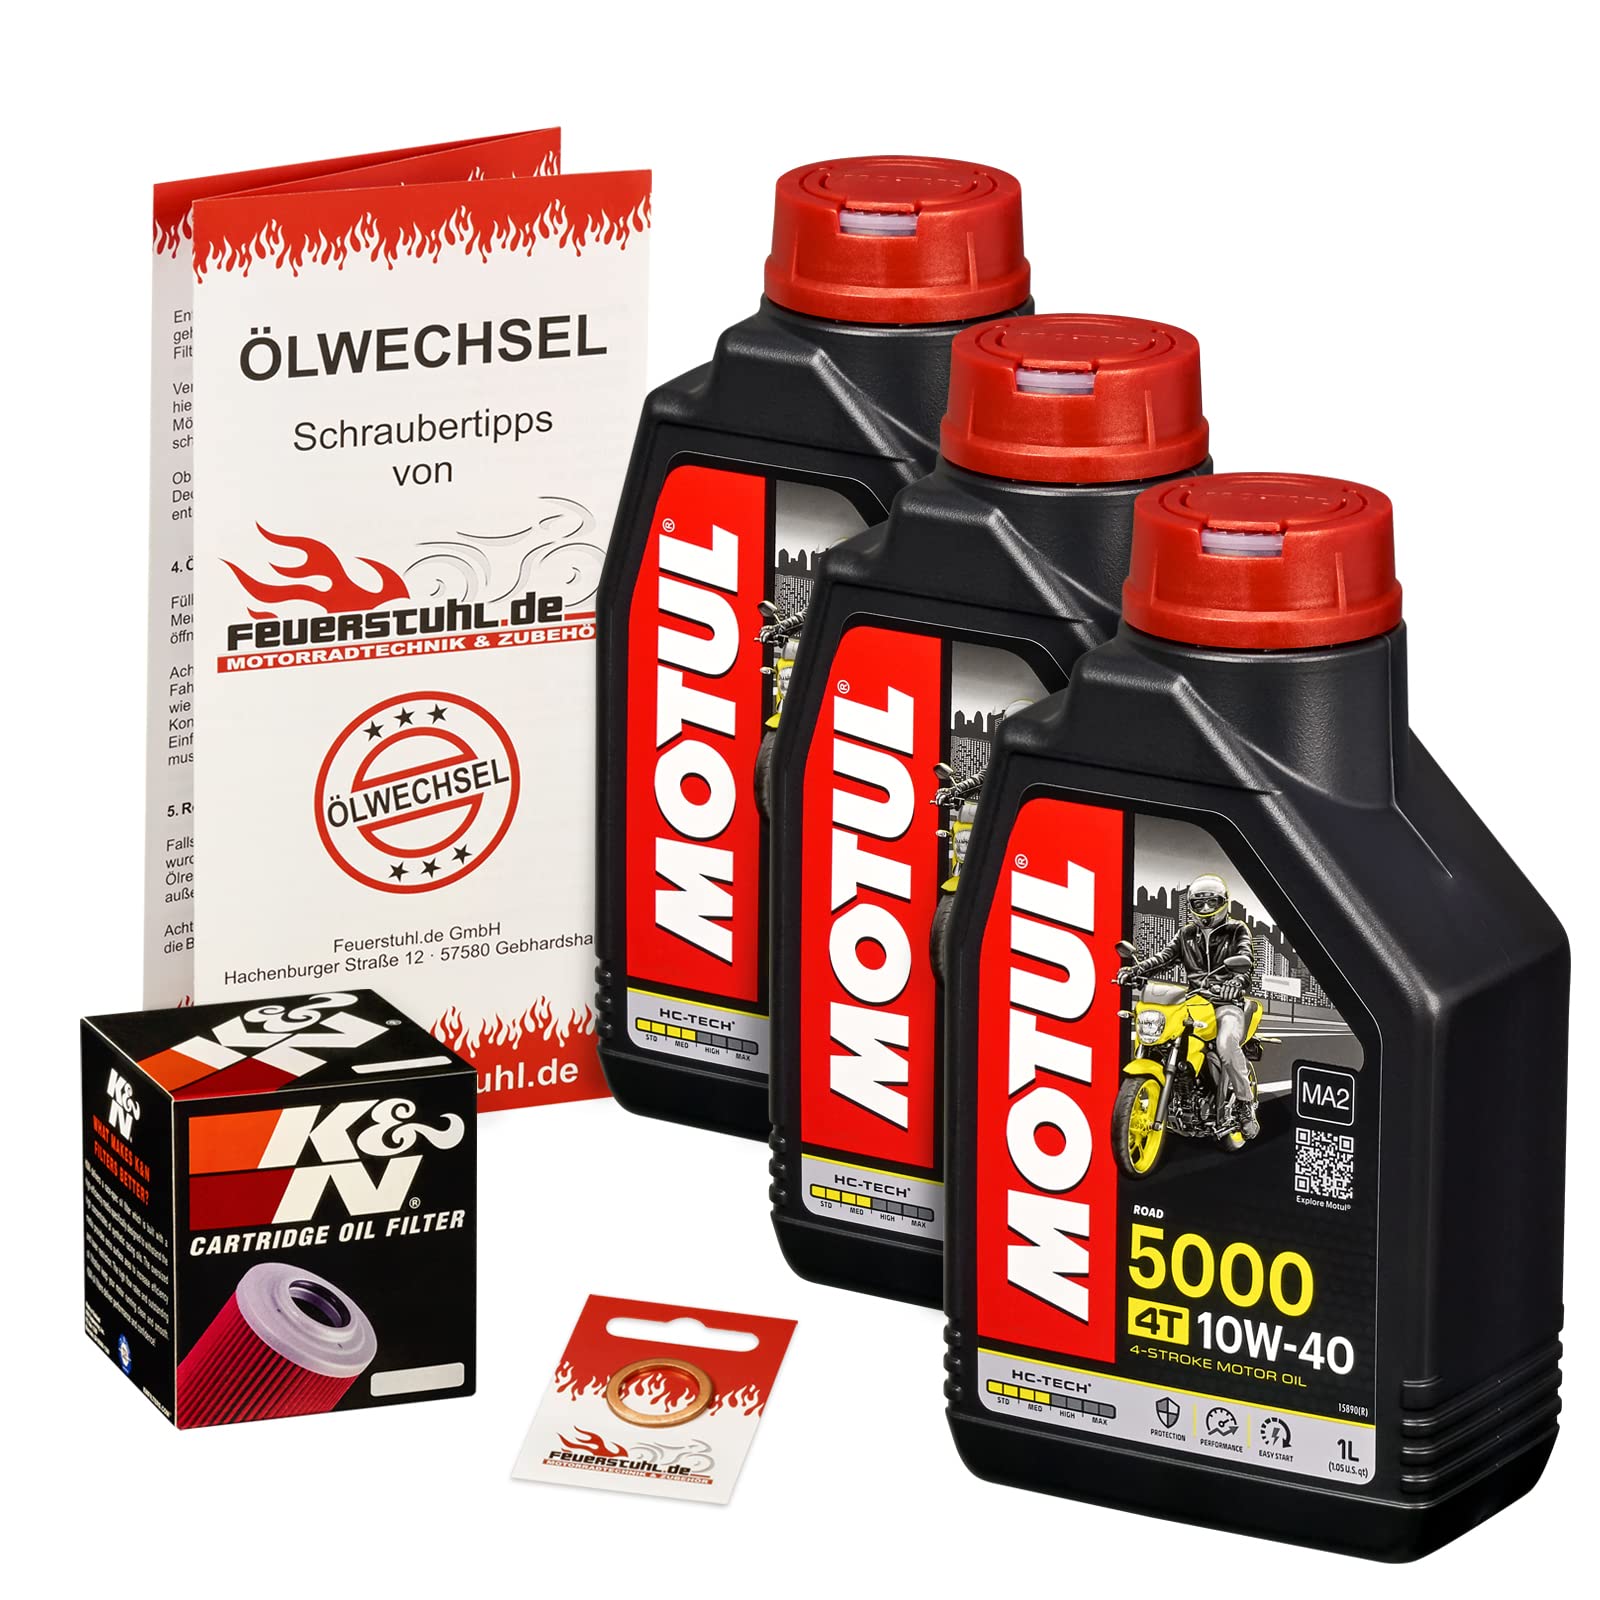 Motul 10W-40 Öl + K&N Ölfilter für Suzuki GS 500 /E/F, 79-08, GM51A GM51B BK - Ölwechselset inkl. Motoröl, Filter, Dichtring von Feuerstuhl.de GmbH